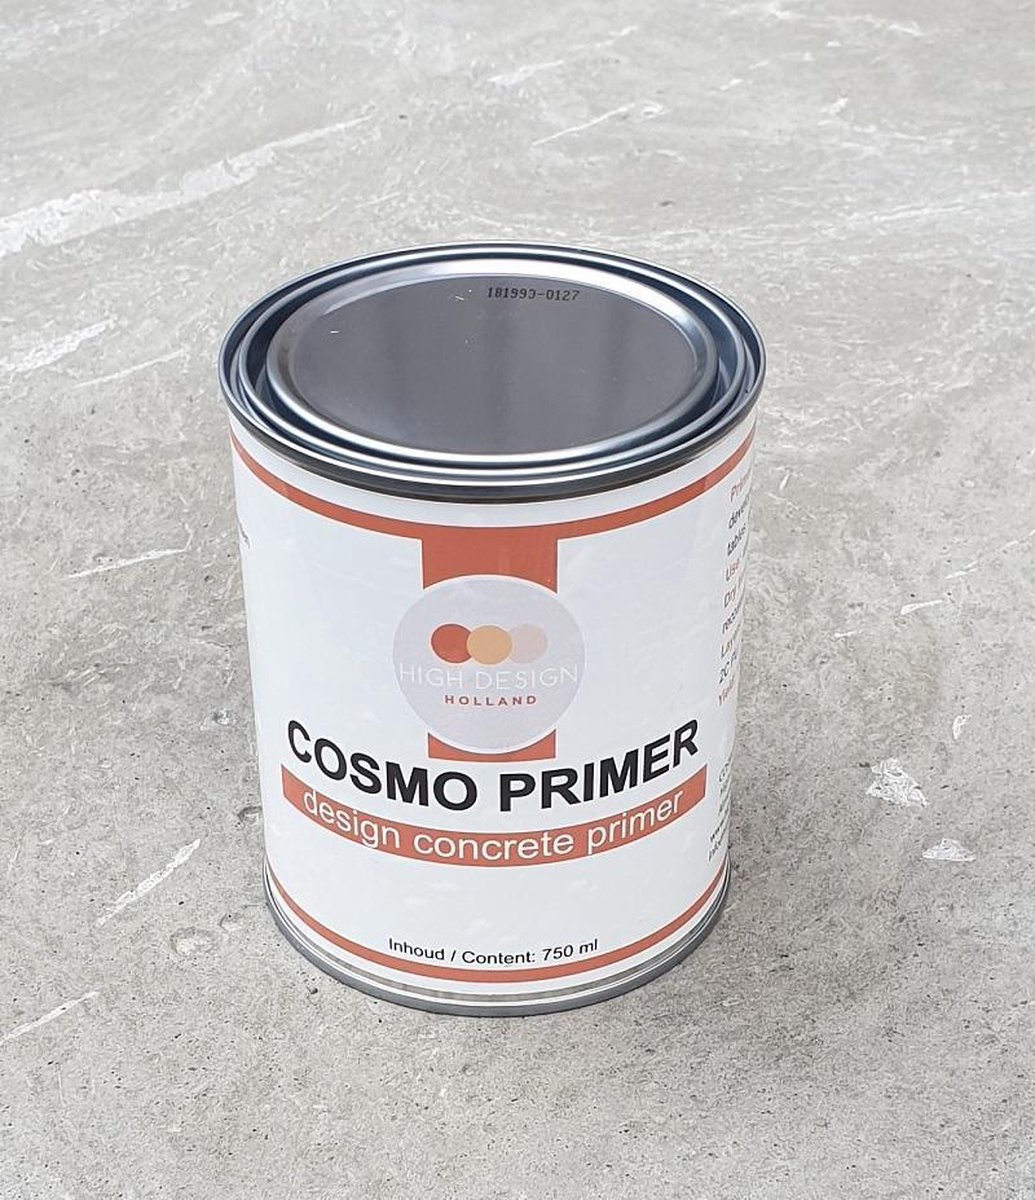 COSMO PRIMER | design beton sealer voor betonnen aanrechtbladen, tafels en wasbakken